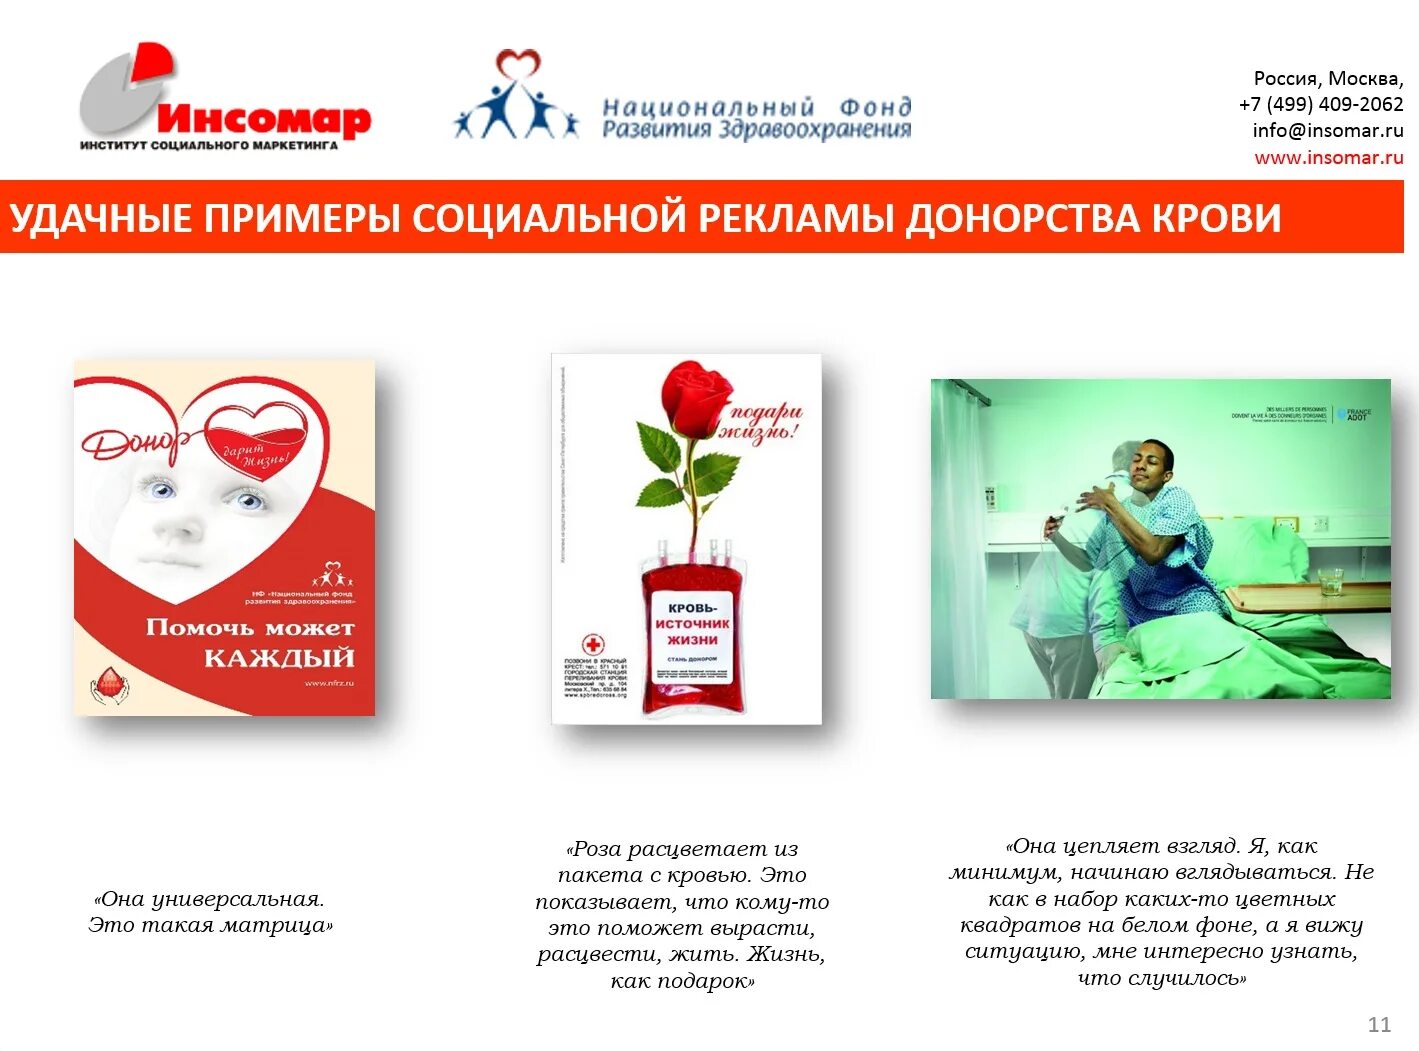 Постоянный донор. Донорство крови в Кизляре. ИНСОМАР лейбл. Купить книгу про институт переливания крови в Москве.